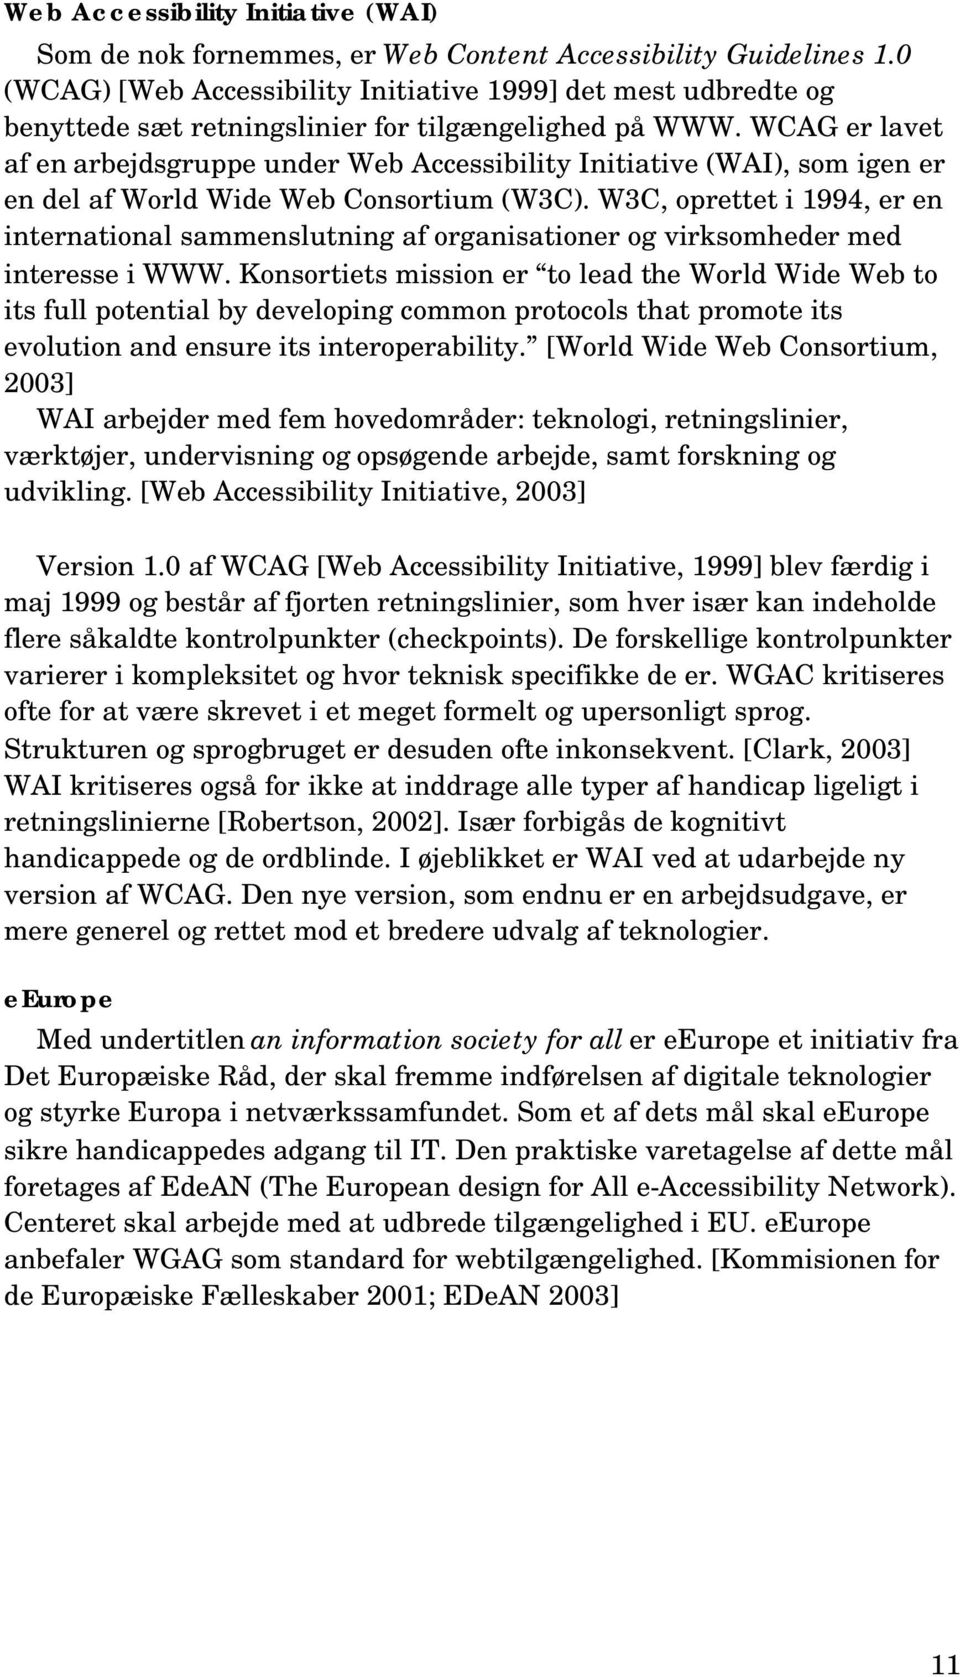 WCAG er lavet af en arbejdsgruppe under Web Accessibility Initiative (WAI), som igen er en del af World Wide Web Consortium (W3C).